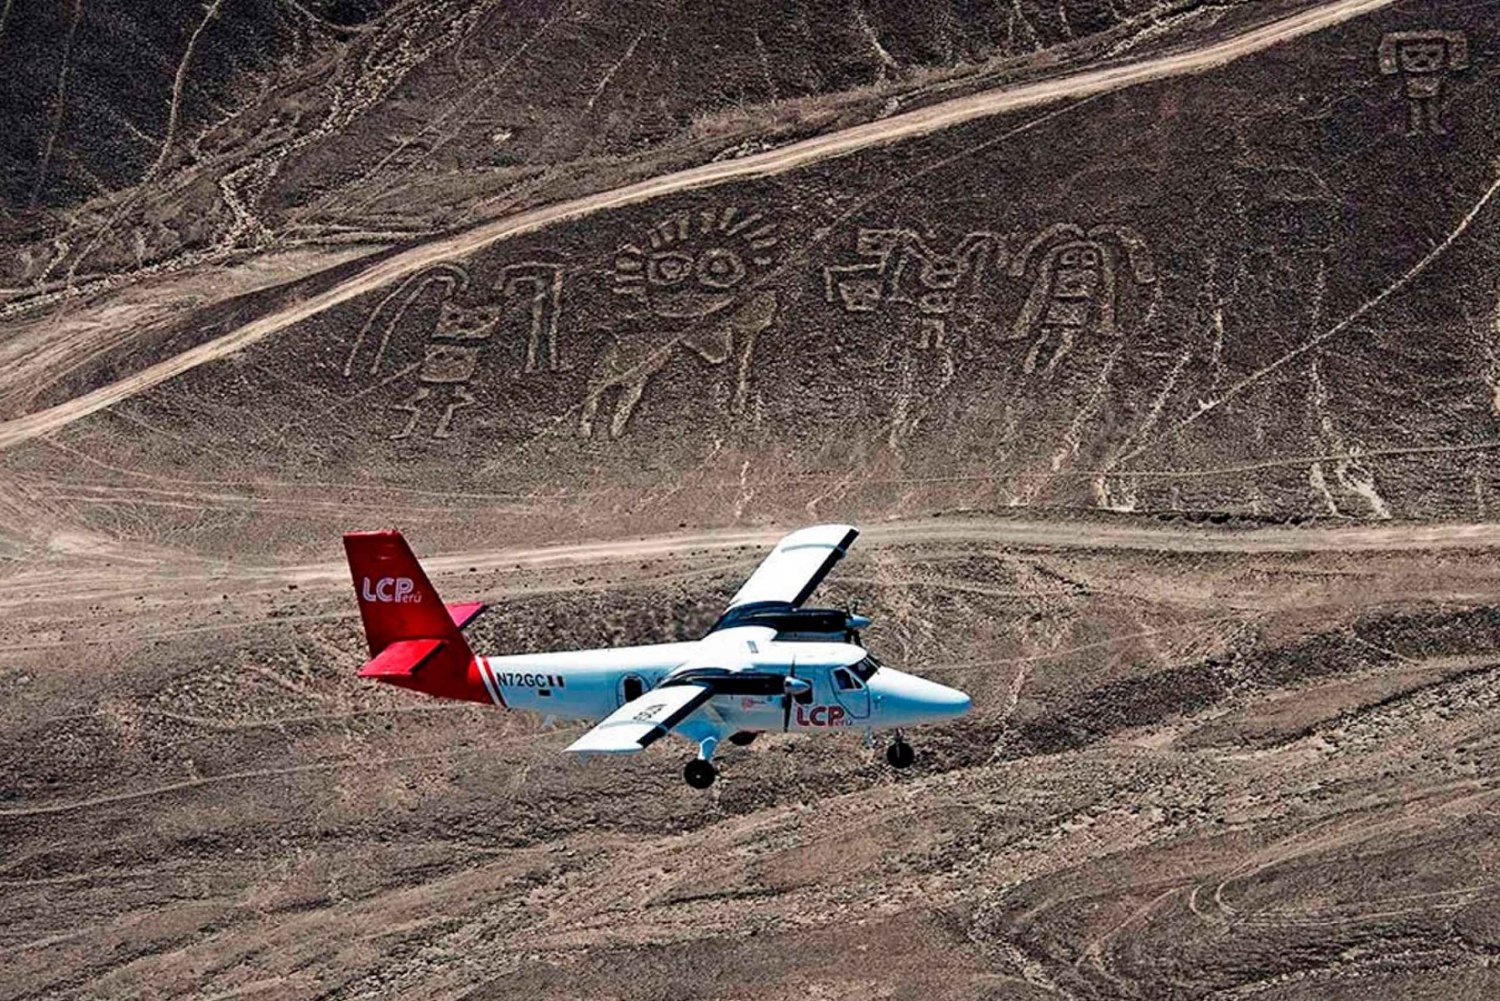 Z Limy: Linie Nazca i wycieczka 1-dniowa na pustynię Ica